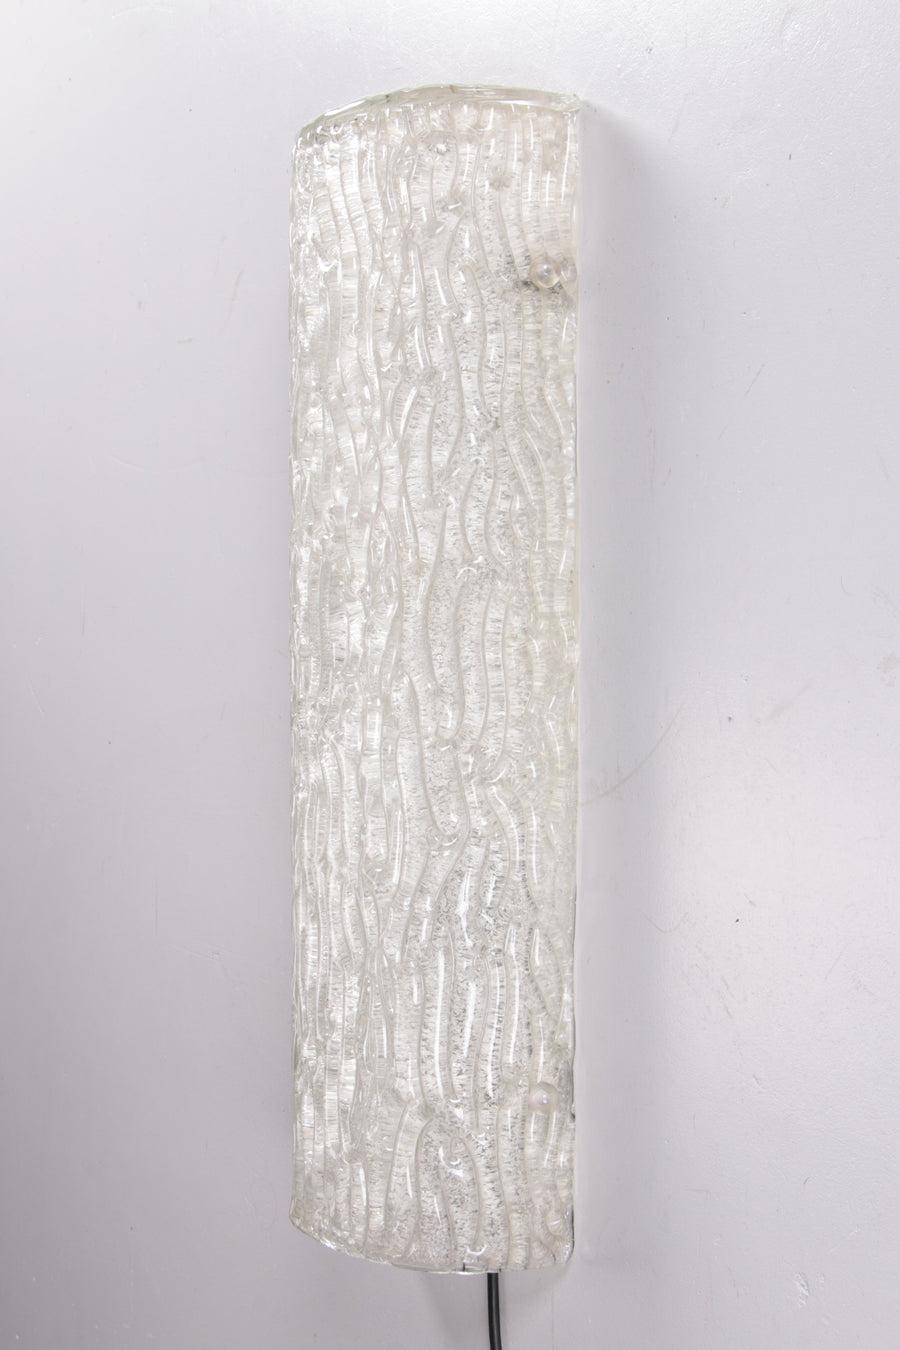 XXL Eis-Wandleuchte von Hillebrand, 60 cm lang, hergestellt 1960 (Moderne der Mitte des Jahrhunderts) im Angebot